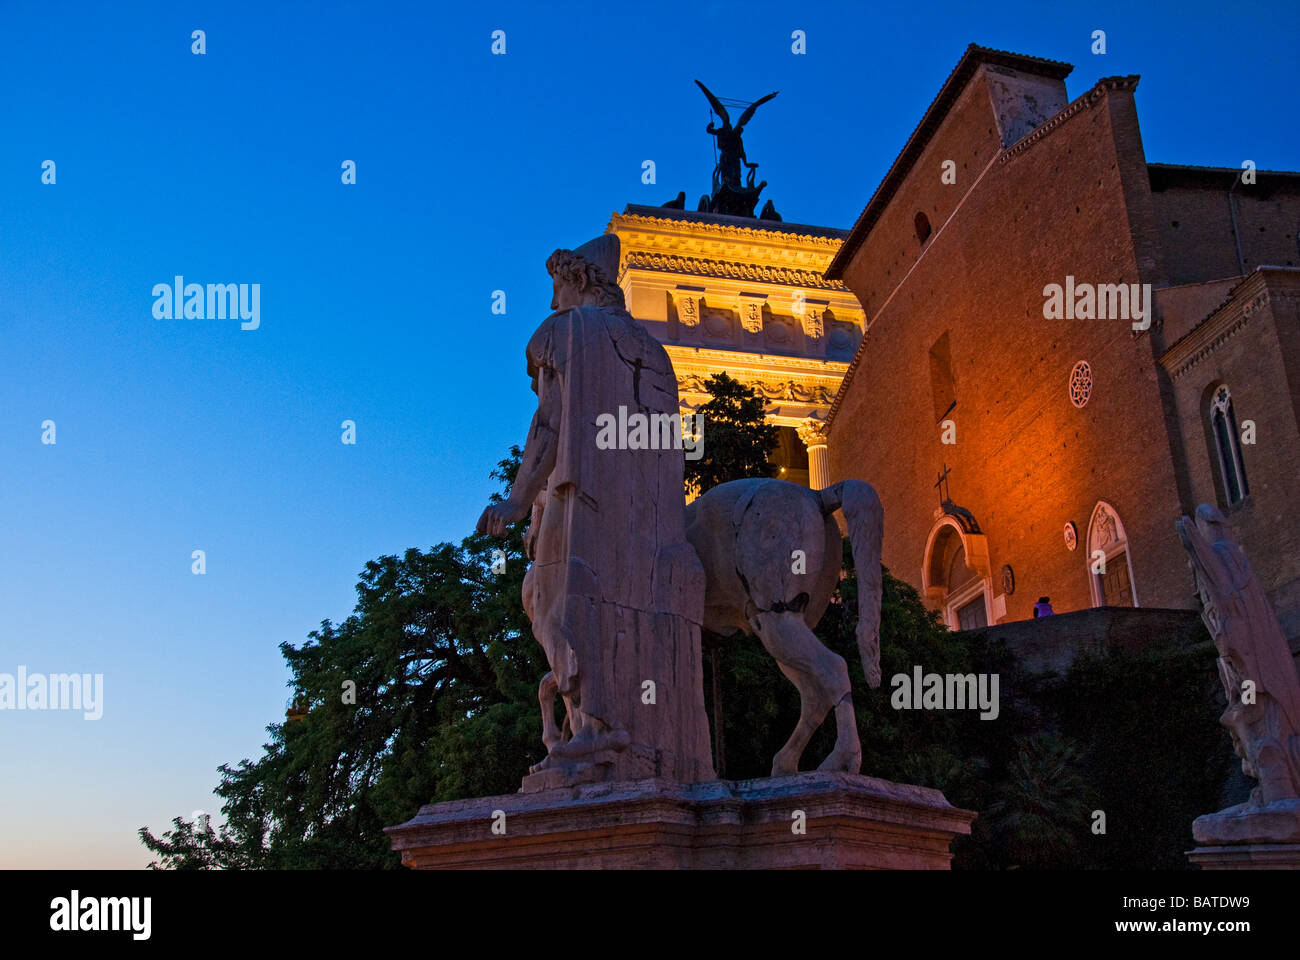 Vue de nuit sur la statue de castor et l'église de Ara Coeli et Vittoriano à Rome - Italie Banque D'Images